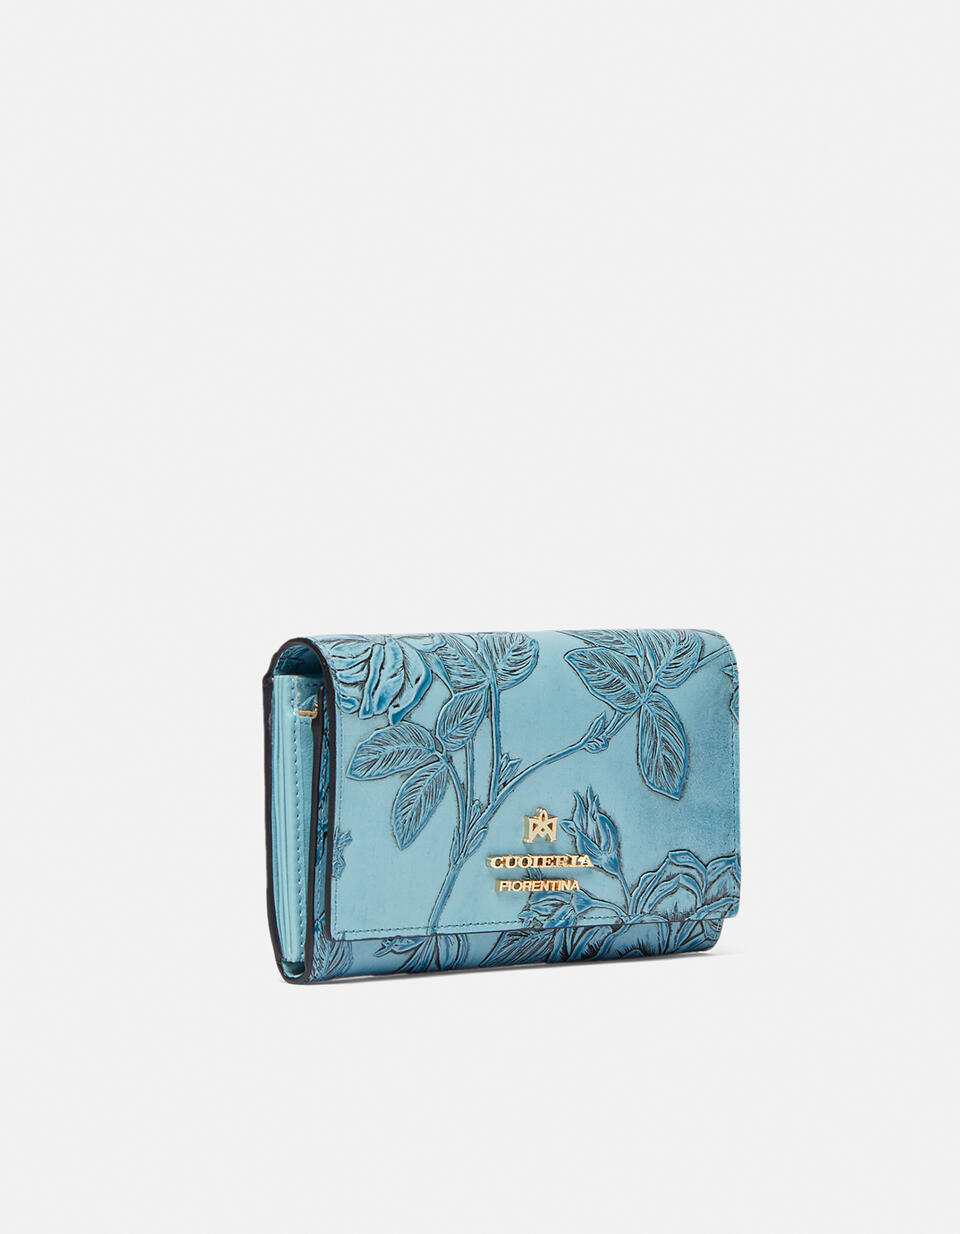 Accordian style wallet - Women's Wallets - Women's Wallets | Wallets Mimì CELESTE - Women's Wallets - Women's Wallets | WalletsCuoieria Fiorentina